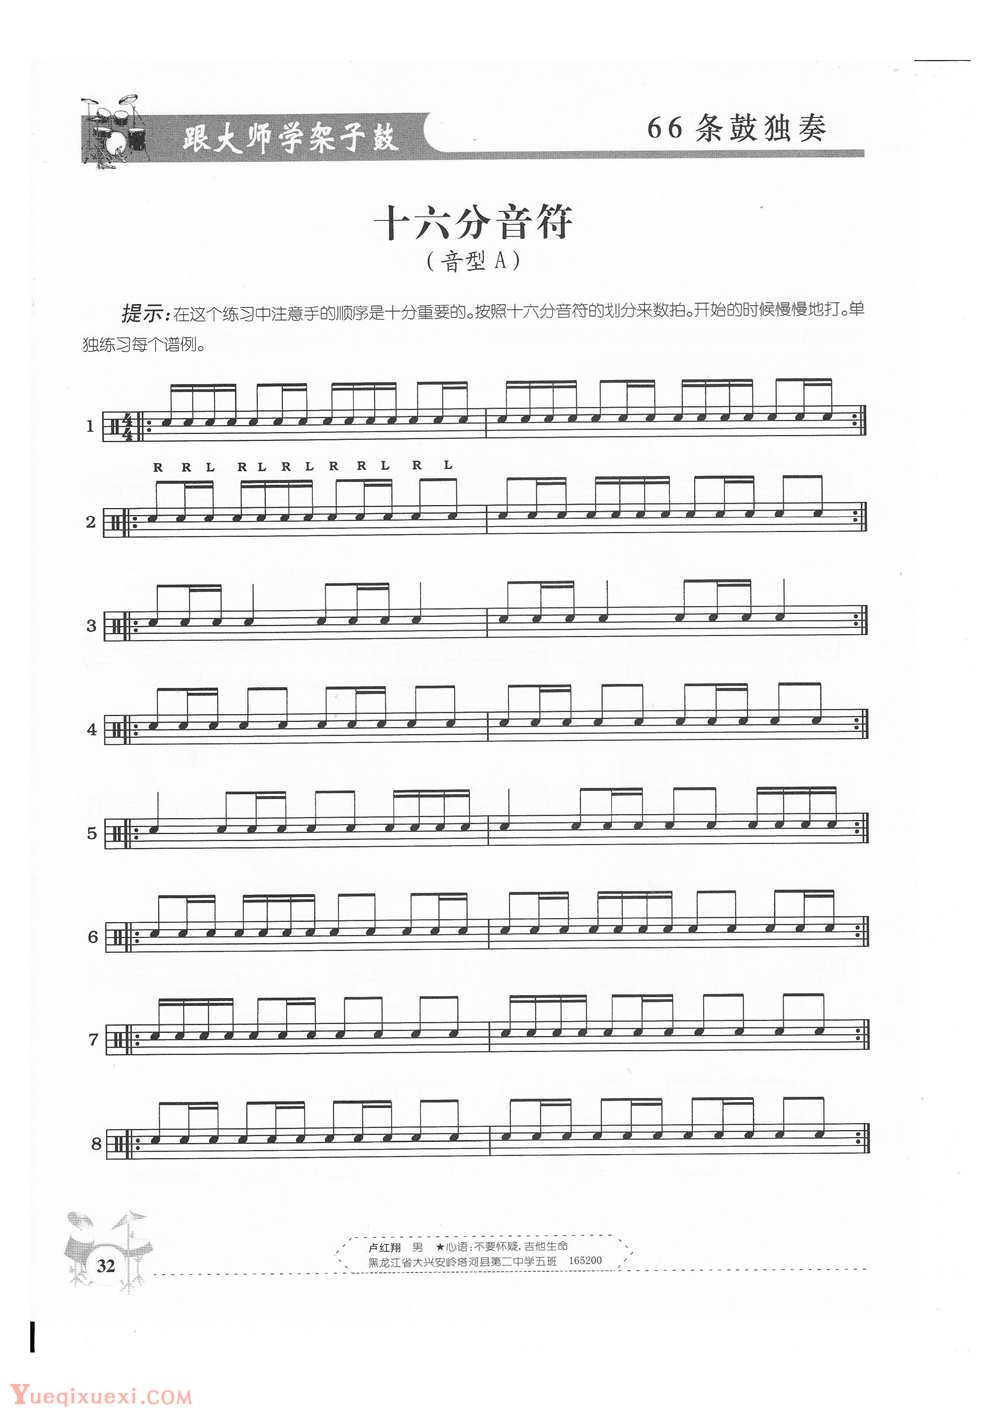 架子鼓基础练习 十六分音符(音型A)